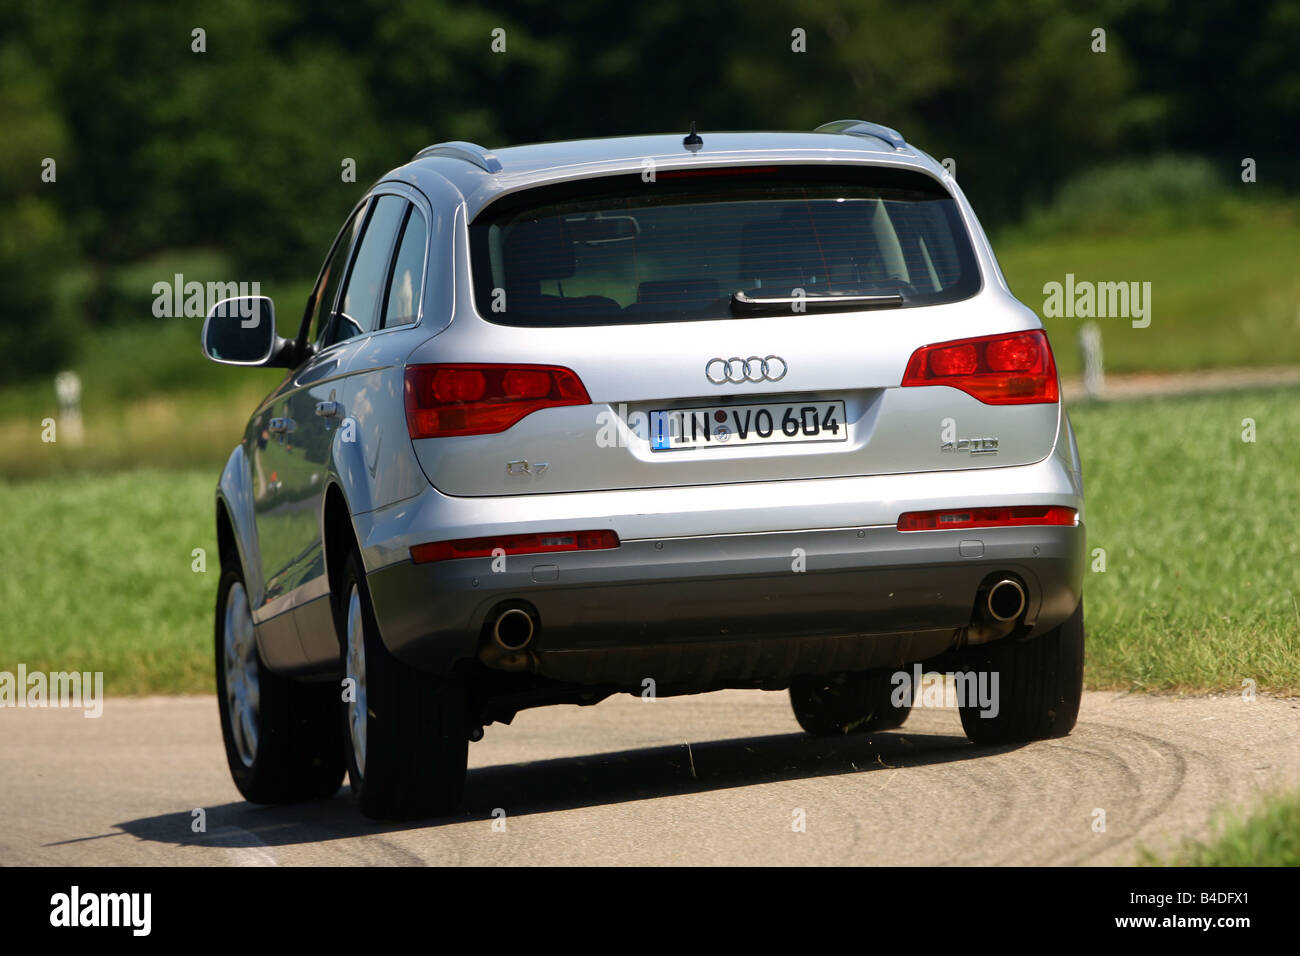 Audi Rear Stockfotos und -bilder Kaufen - Seite 3 - Alamy